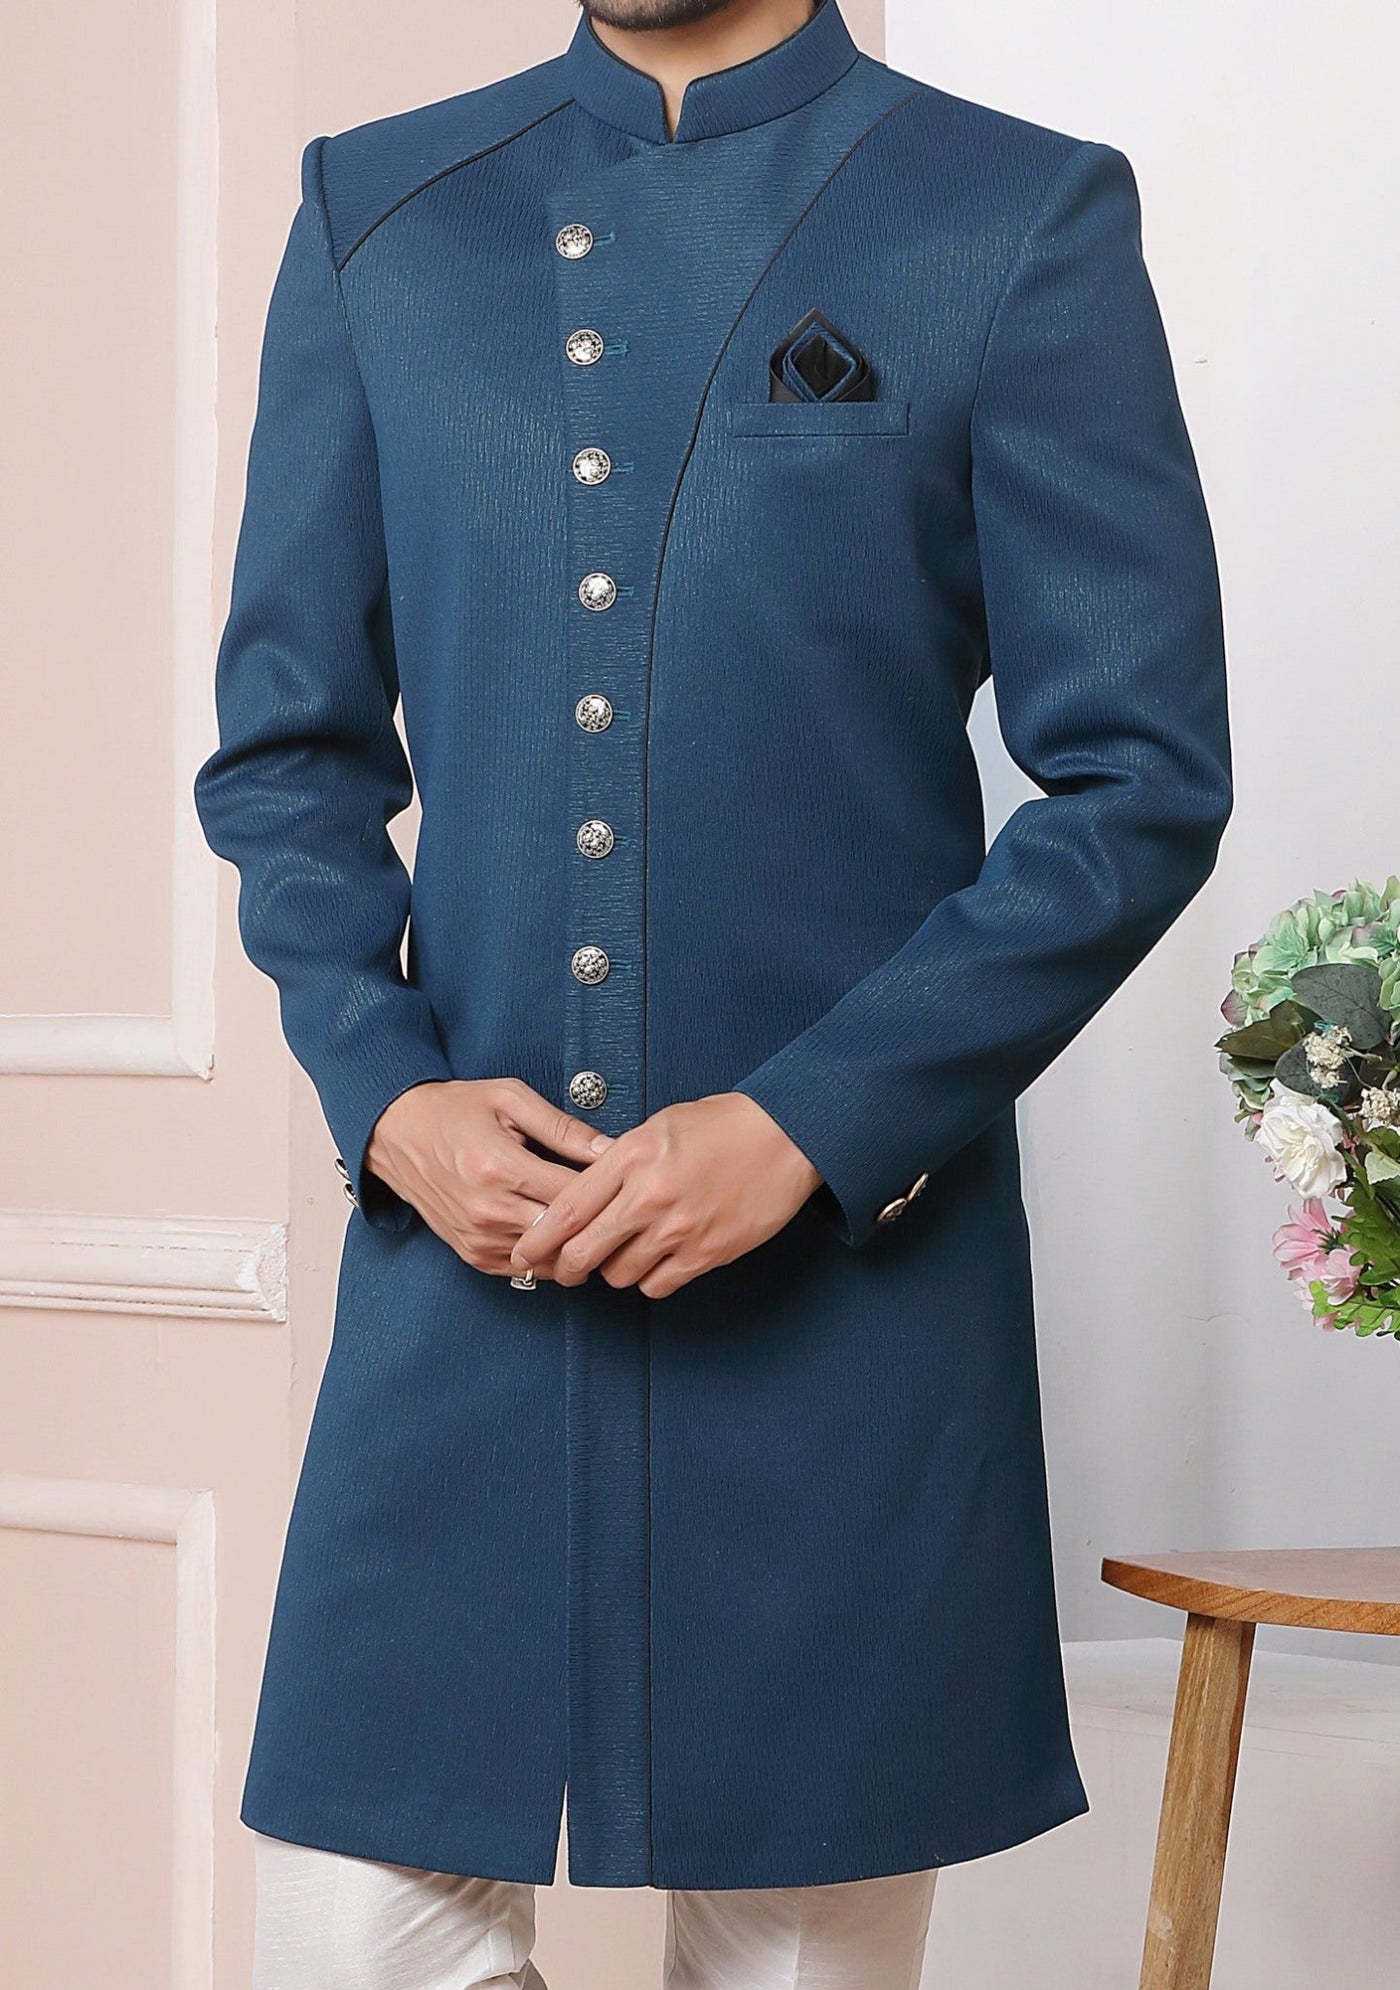 Men's Indo Western Party Wear Sherwani Suit - db20469